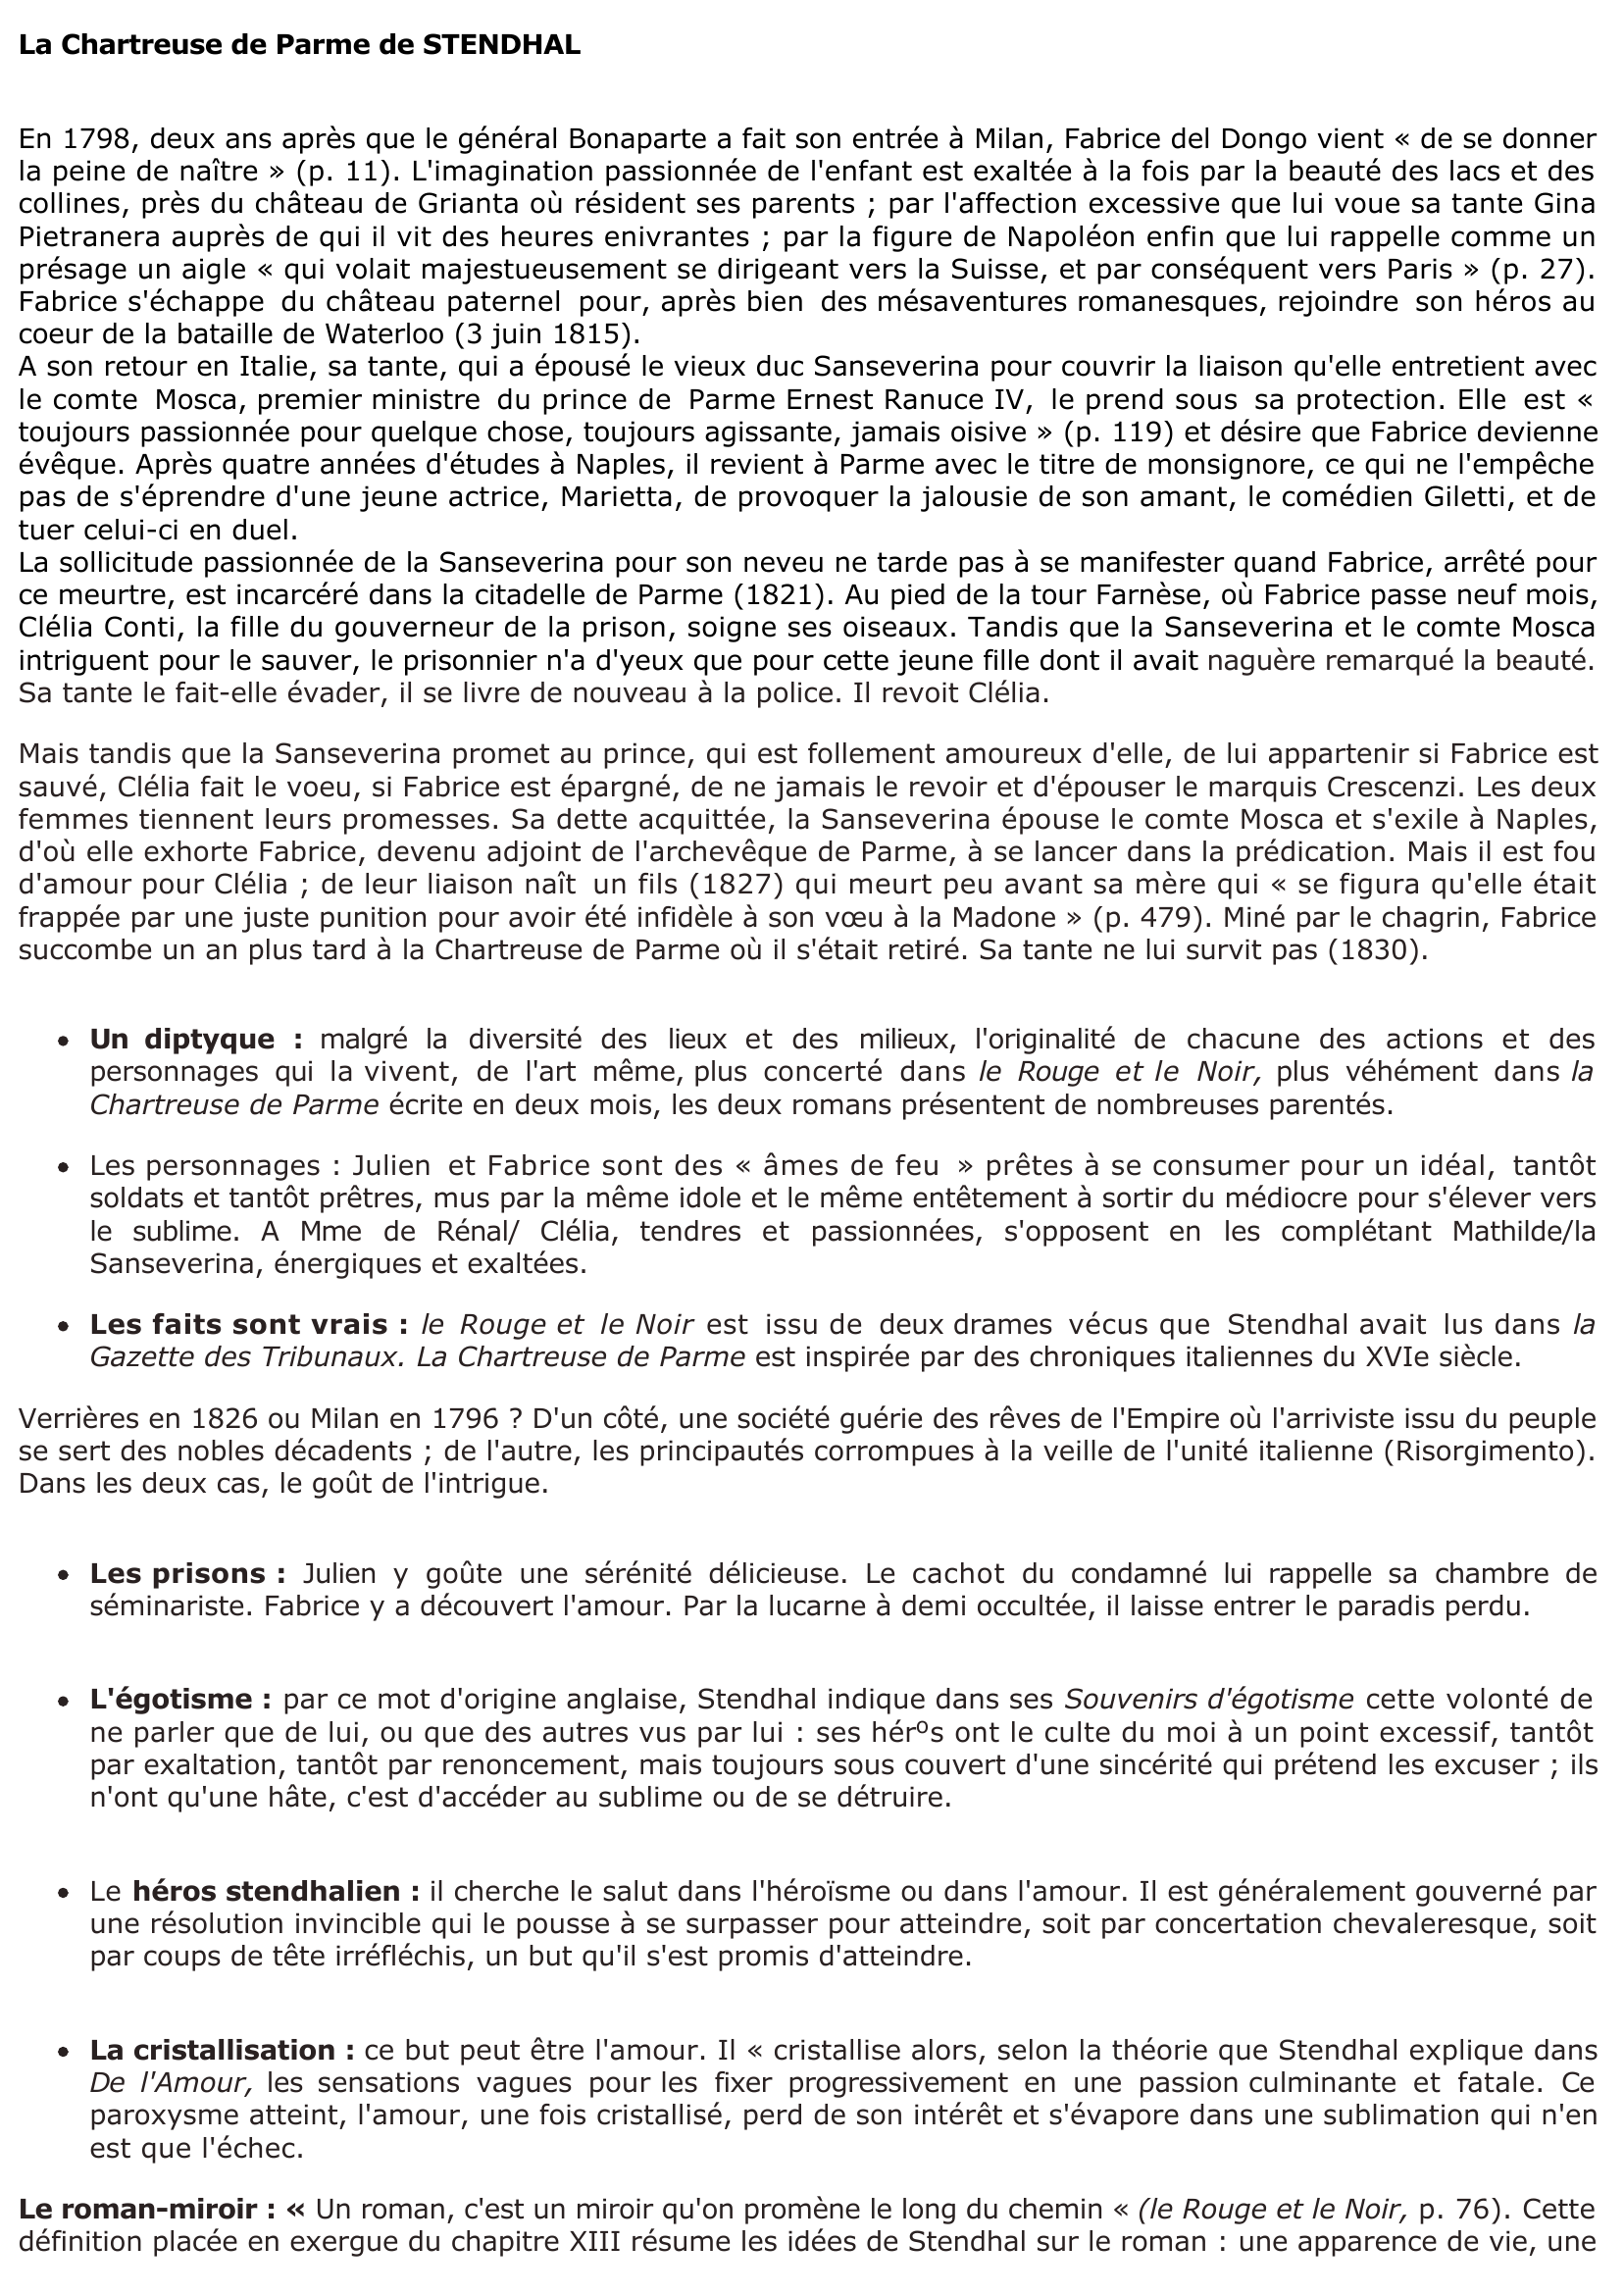 Prévisualisation du document Résumé: La Chartreuse de Parme de STENDHAL